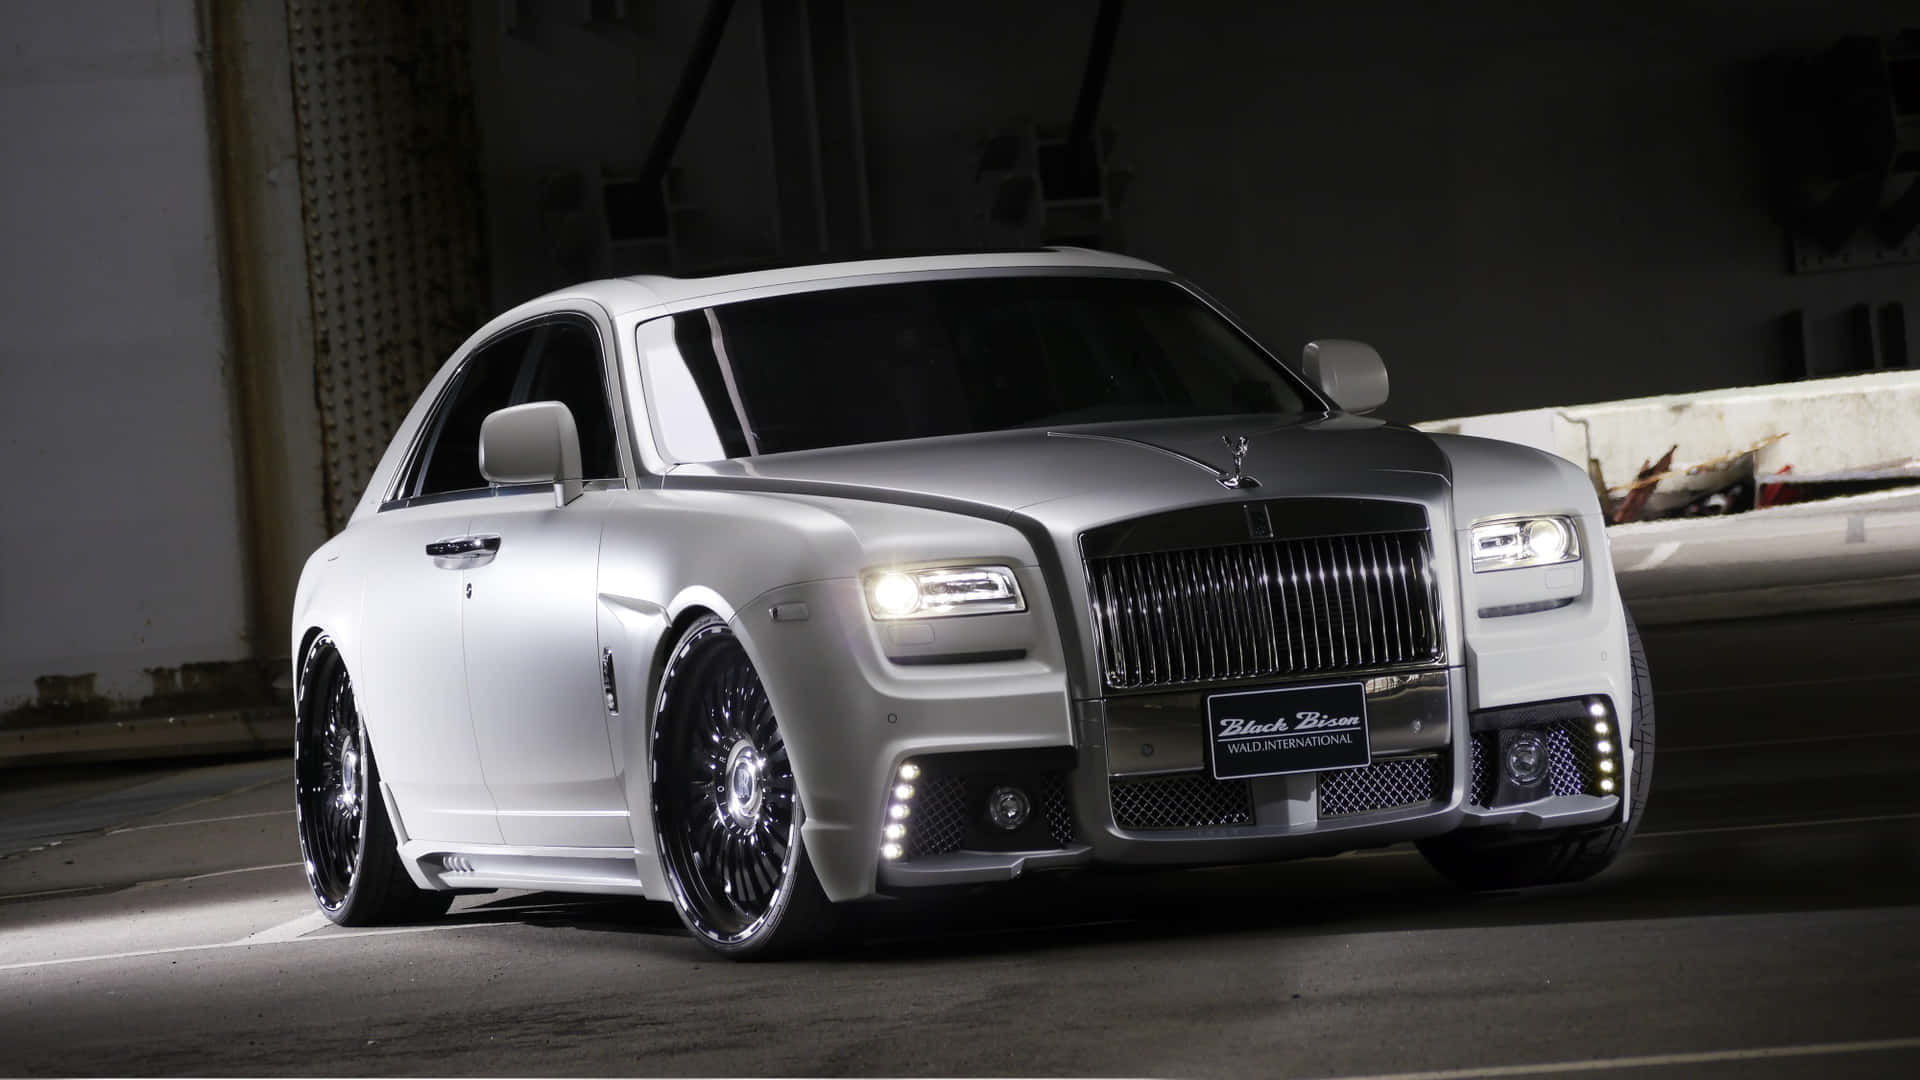 Exquisite Luxury - The Rolls Royce Ghost Wallpaper